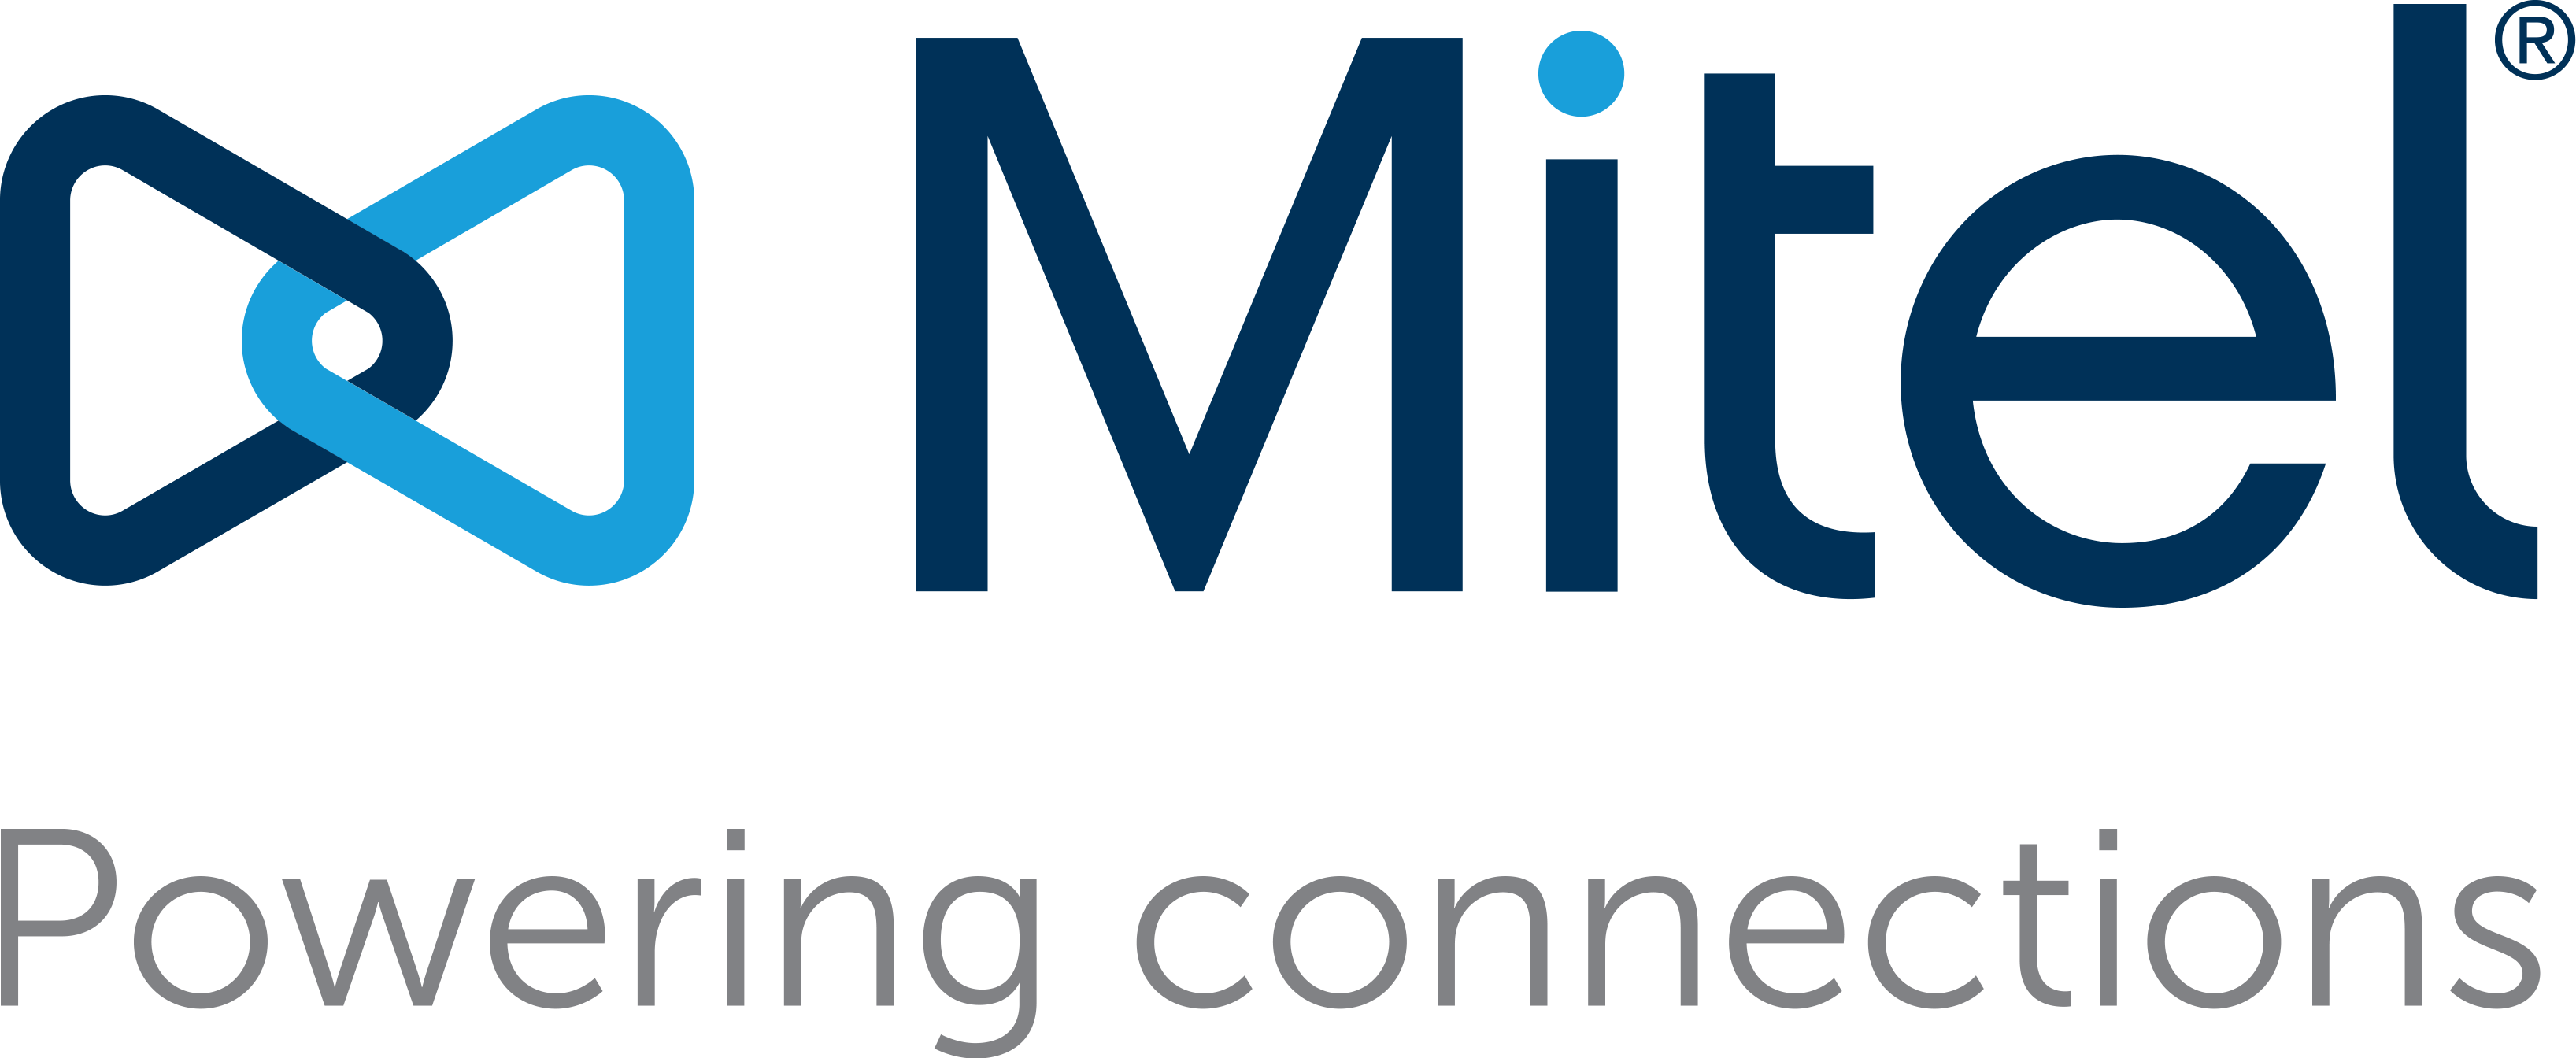 Mitel Logo - Mitel-Logo-Full-Color-Tagline-eps - G4h